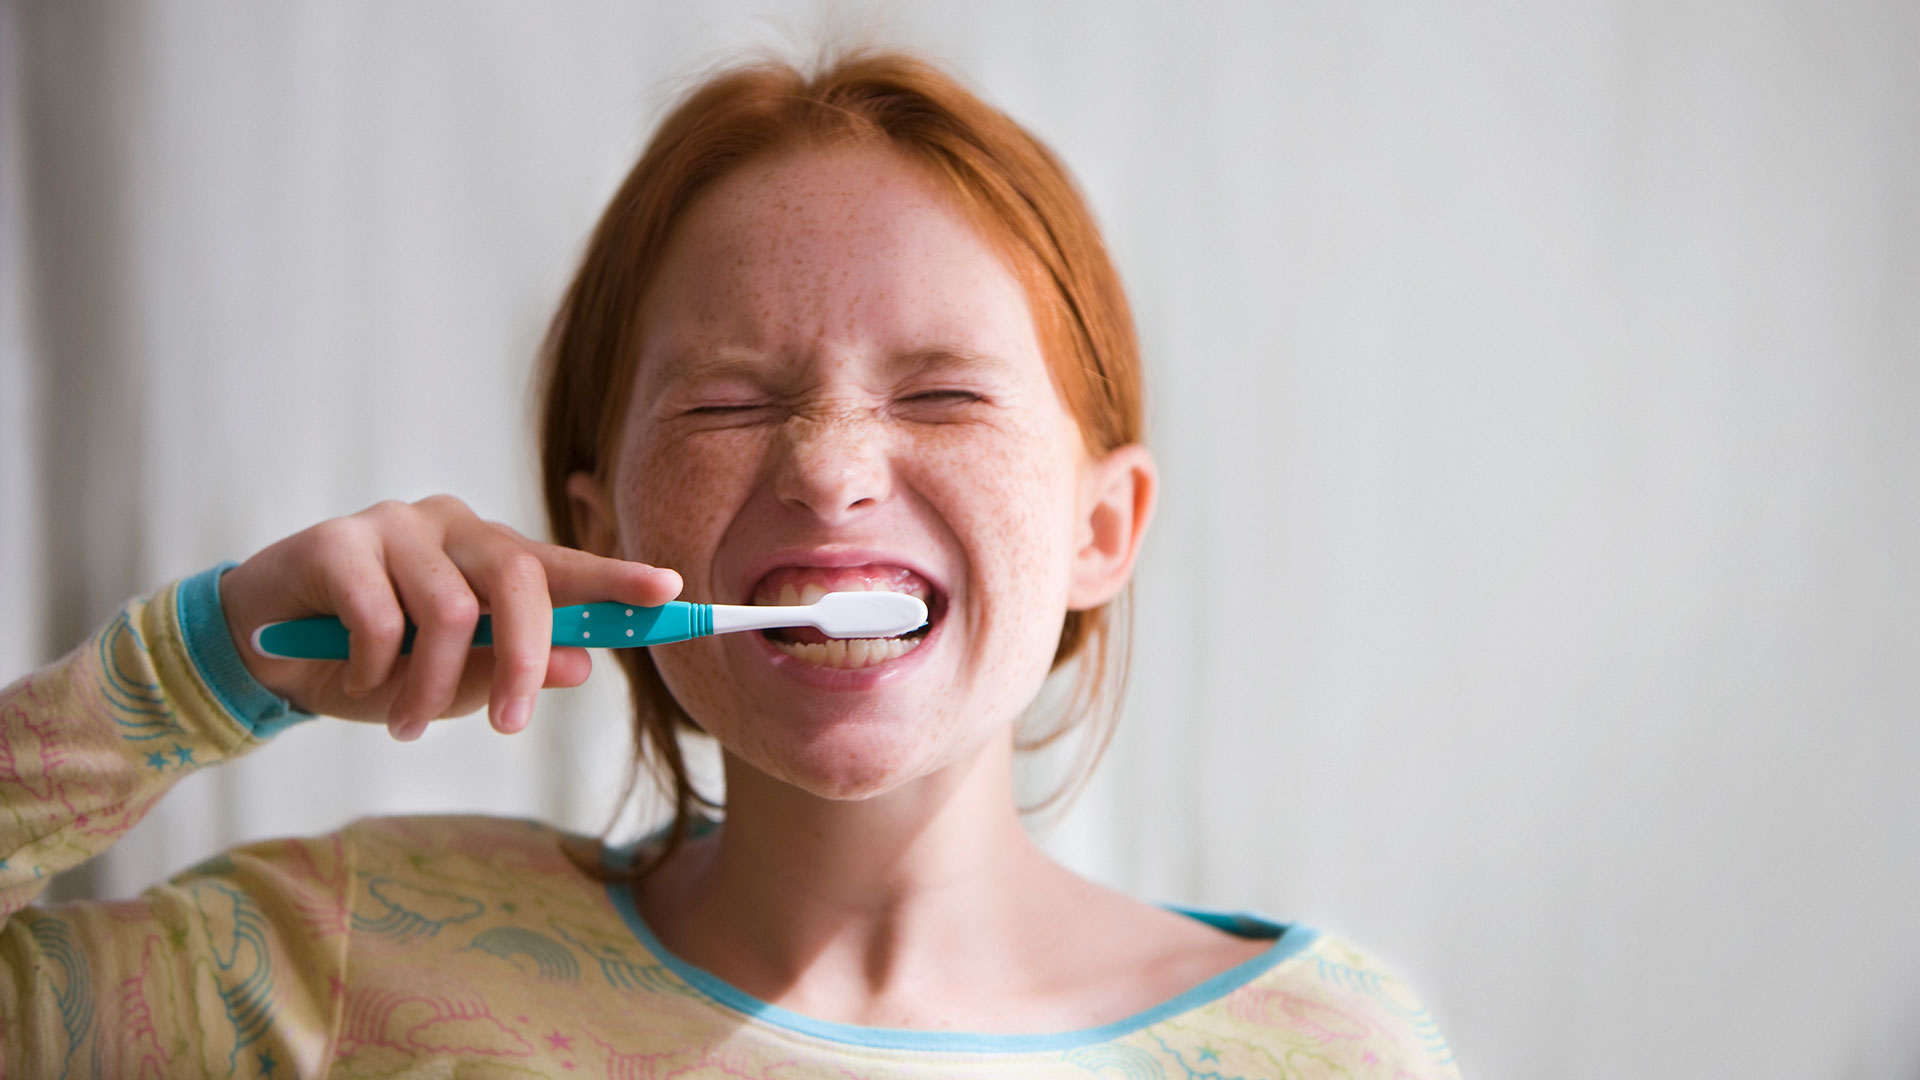 Los expertos afirman que es necesario cepillarse los dientes de 2 a 3 veces por día
(Getty Images)